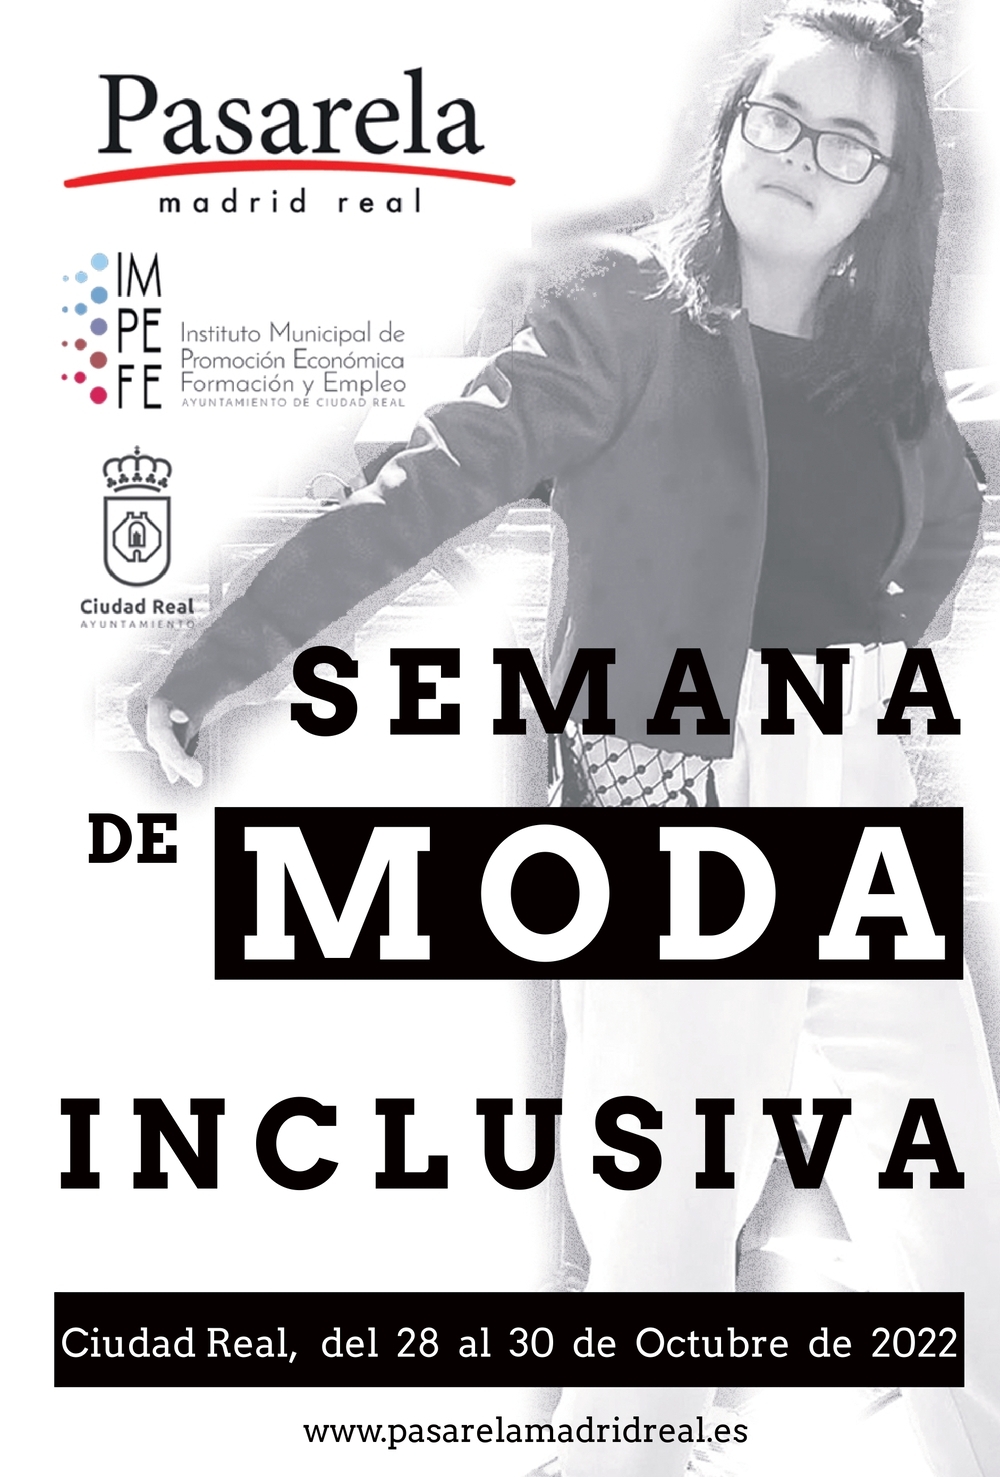 Ciudad Real acogerá las primeras jornadas de moda inclusiva